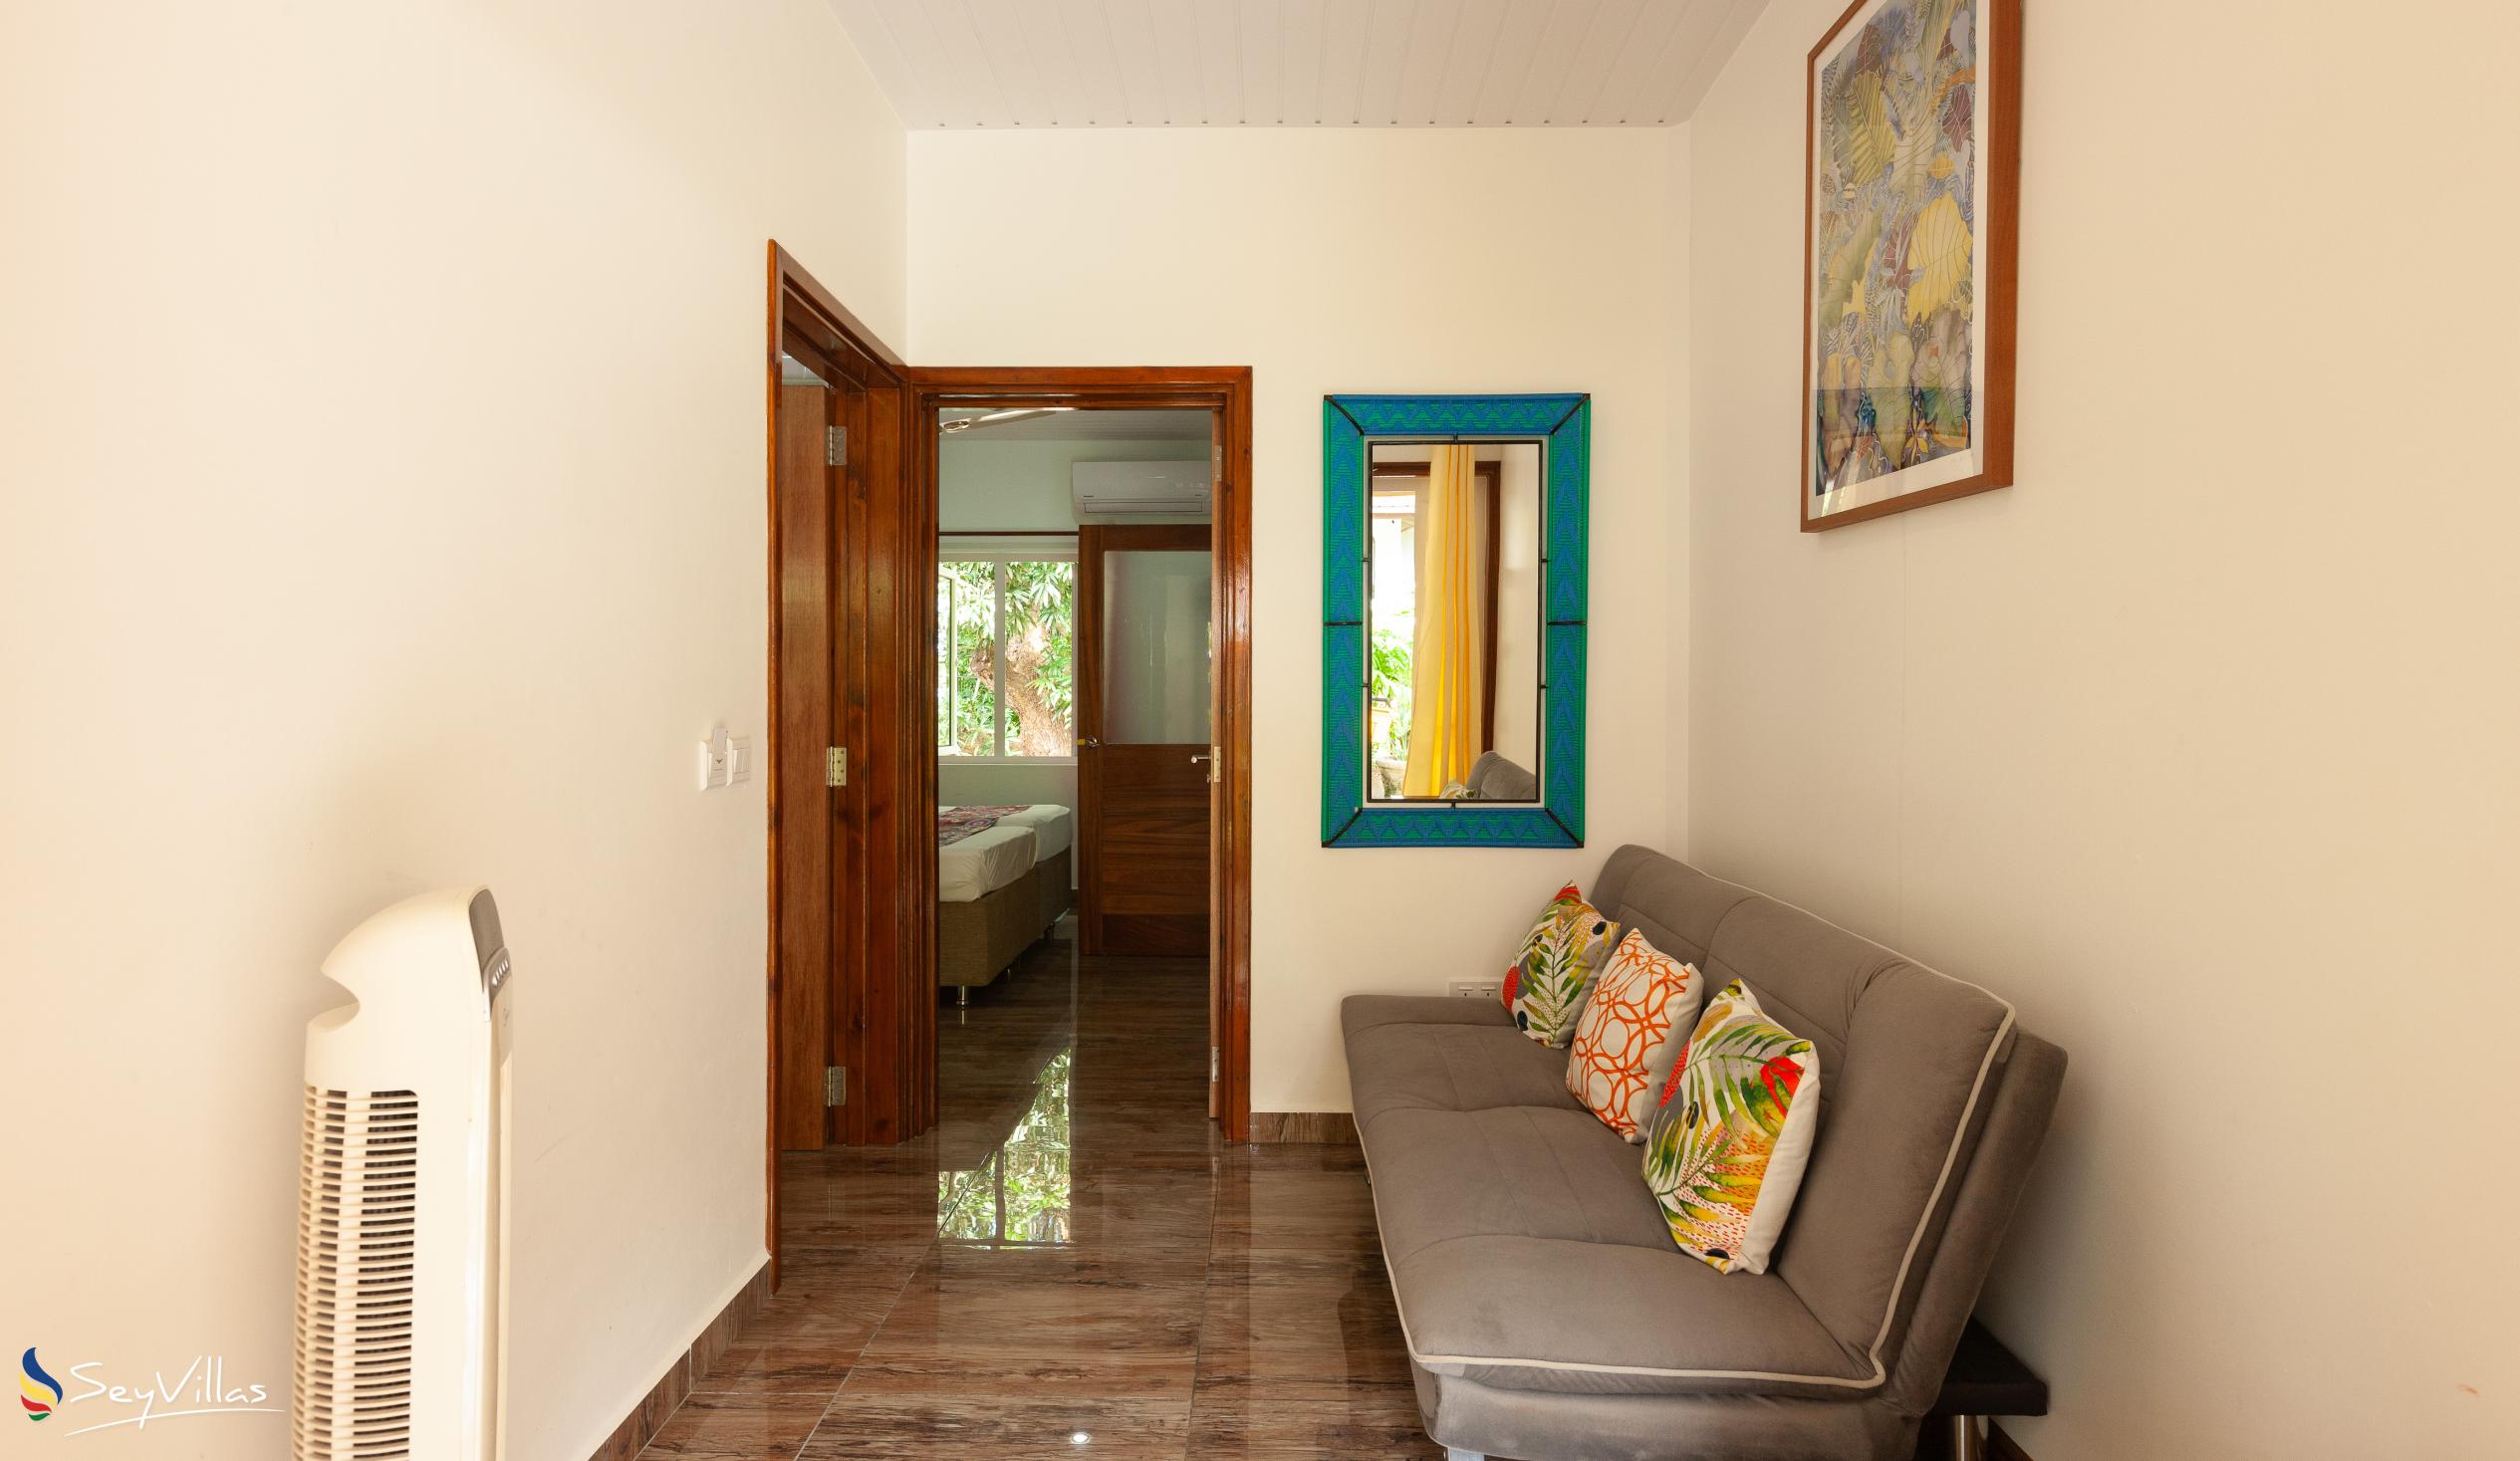 Photo 74: Chloe's Cottage - Deluxe Garden Apartment - La Digue (Seychelles)